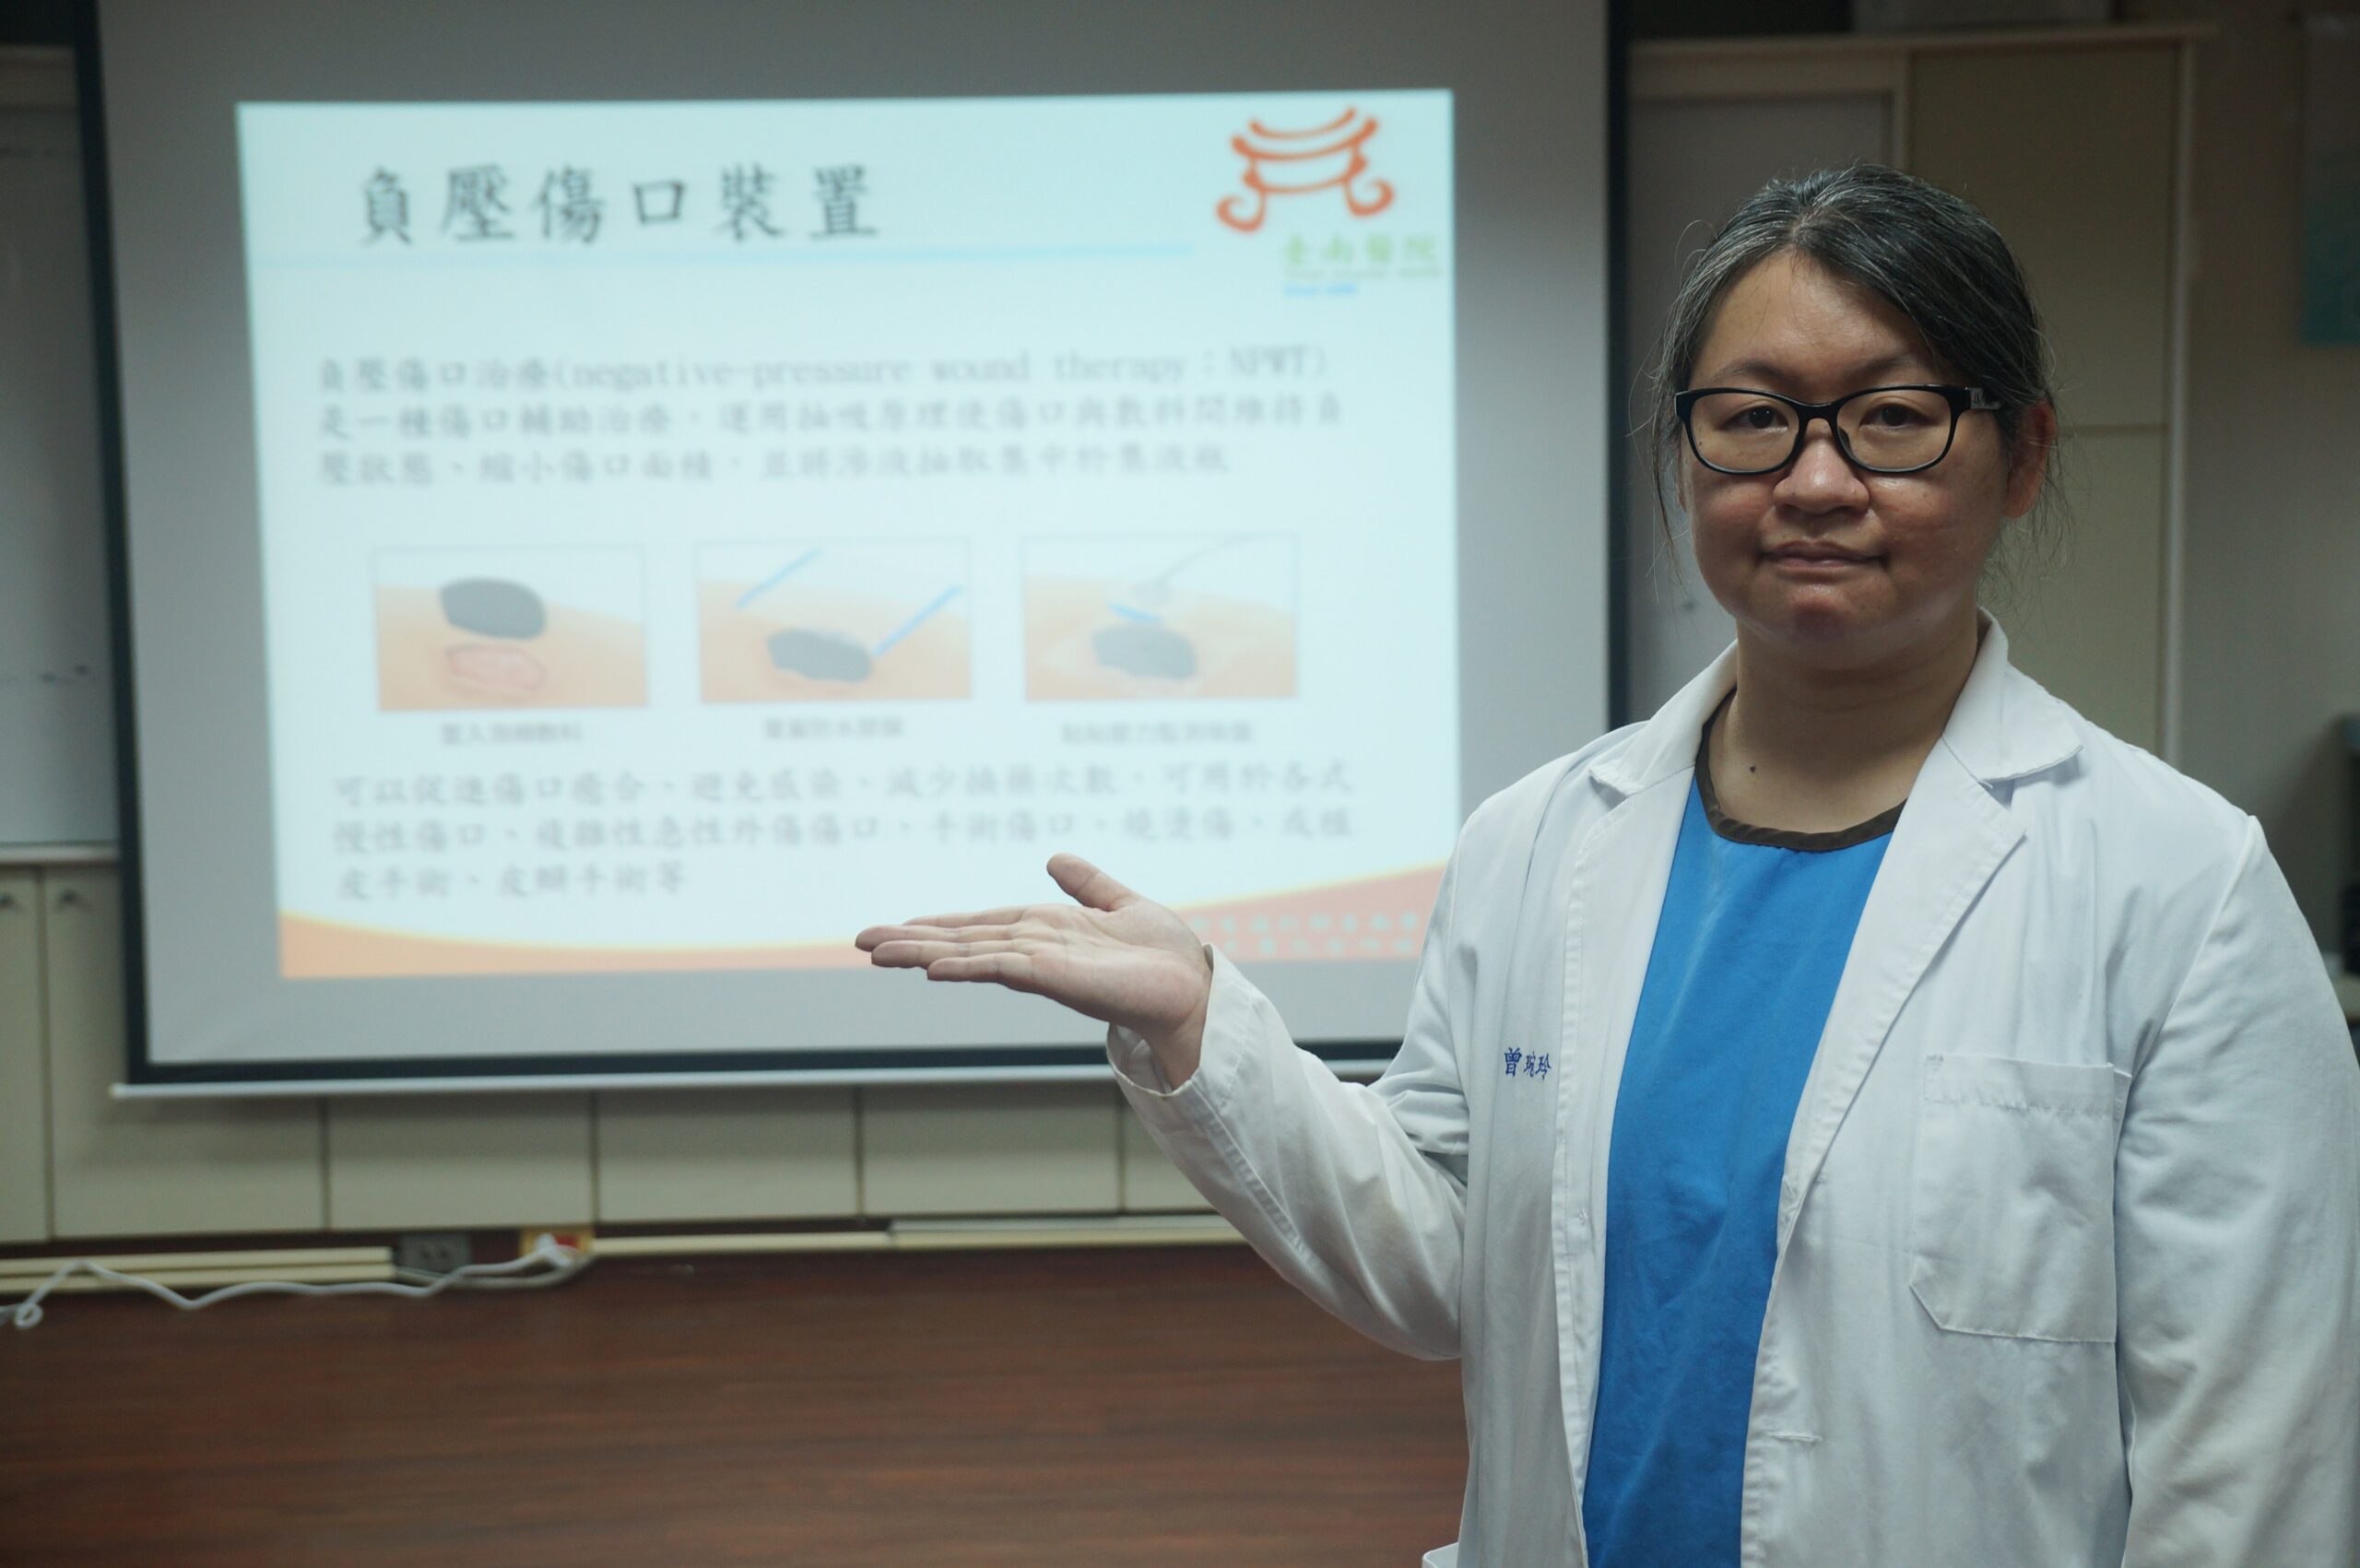 台南醫院醫師曾琬玲讓病患使用負壓傷口裝置改善植皮術後照顧品質